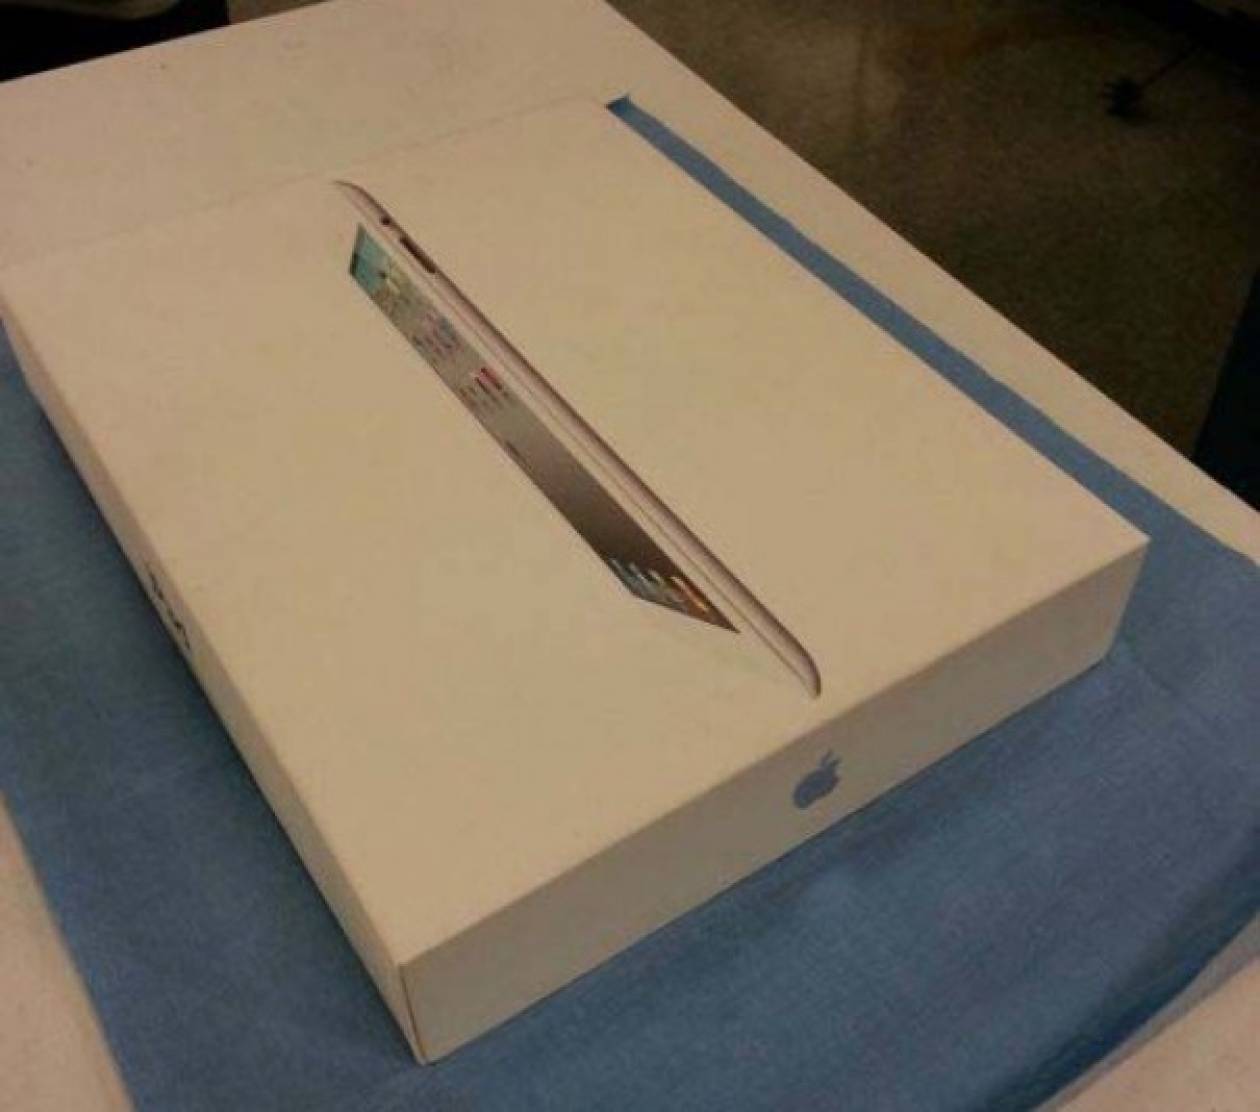 Τo iPad έκρυβε μέσα μια... πρόταση γάμου! (pics)